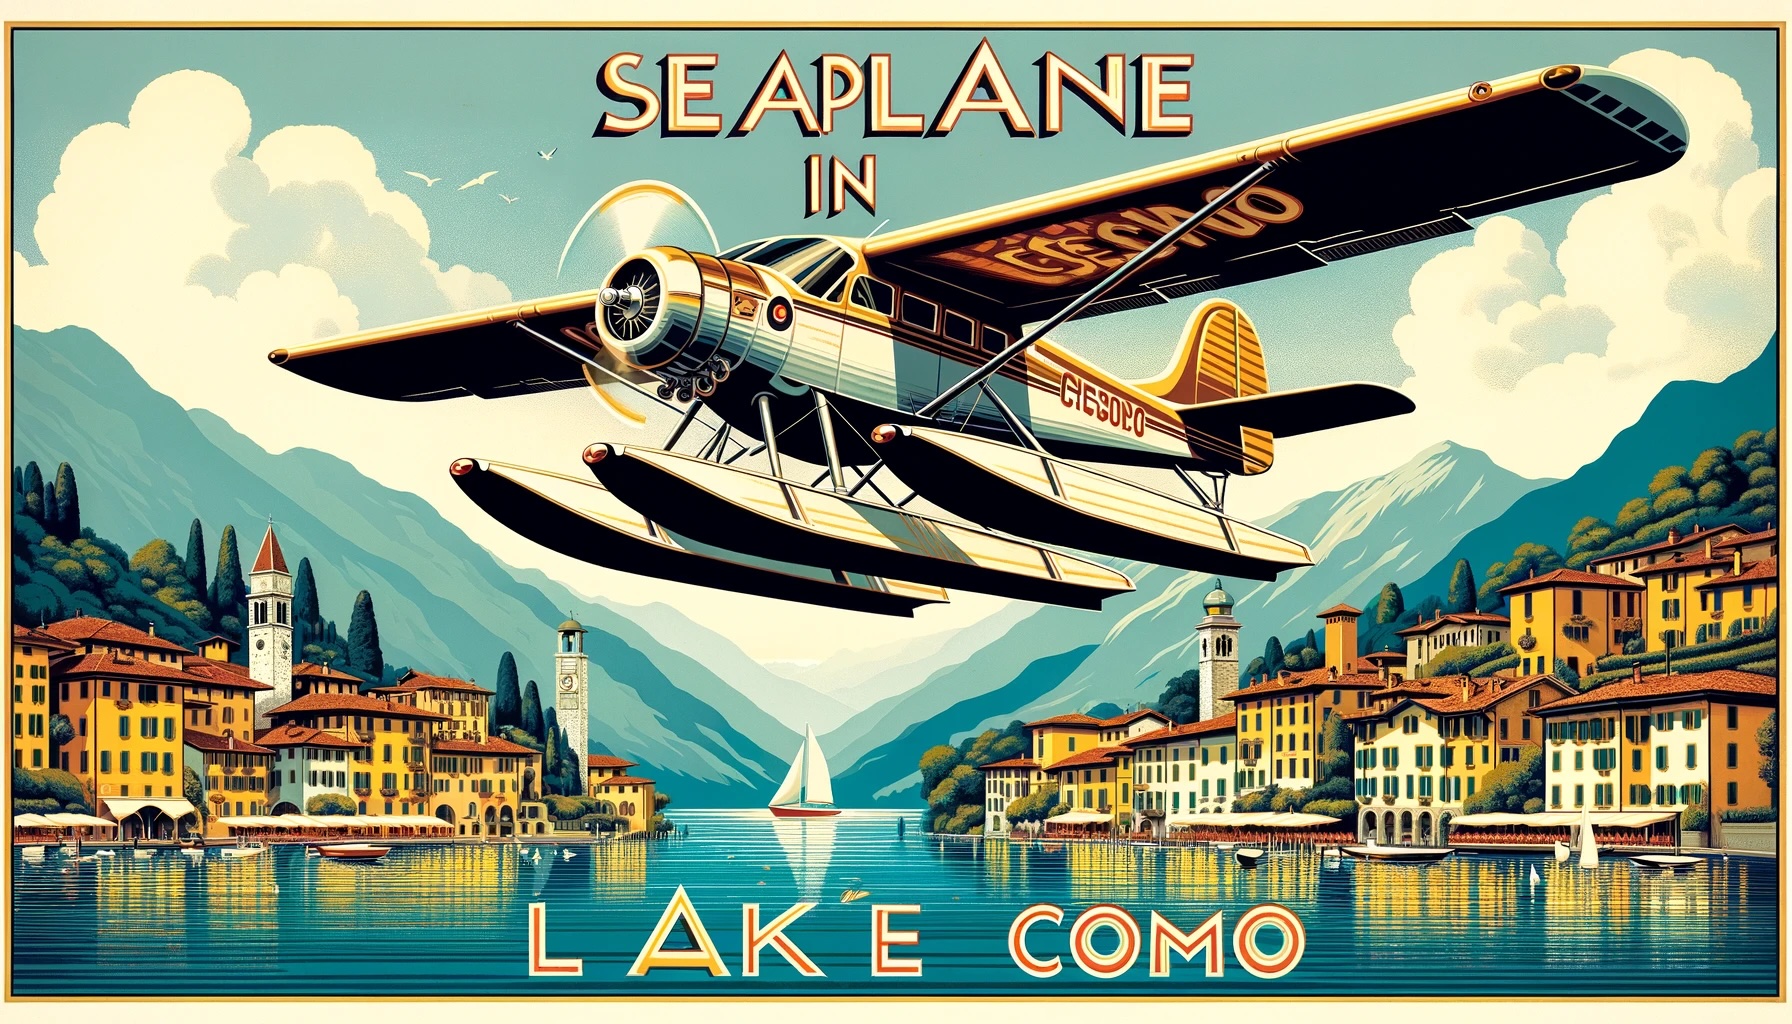 Seaplane in Lake Como